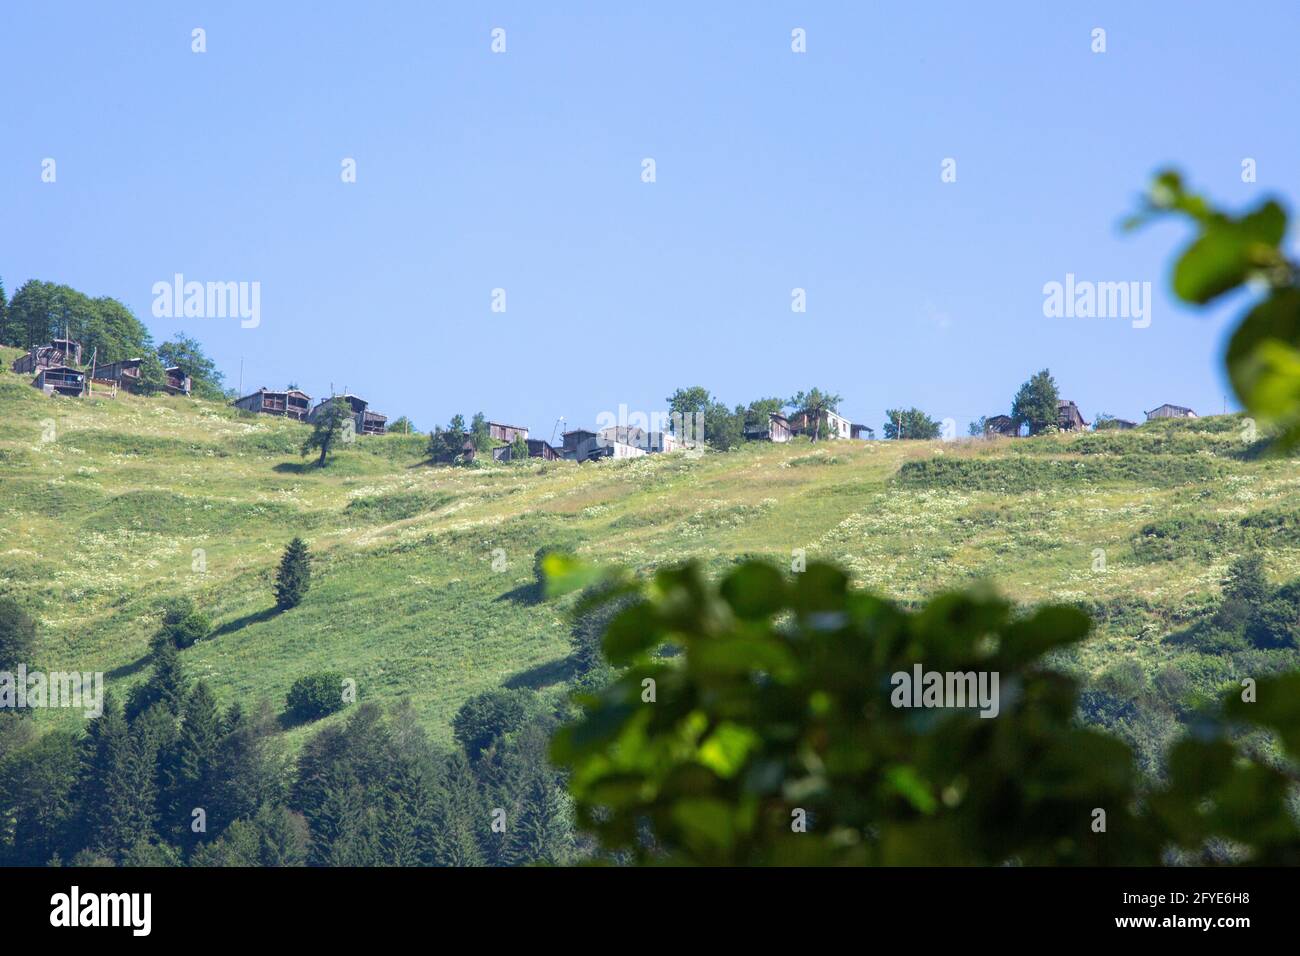 Vista rara e suggestiva sulle montagne della Turchia adornata da alberi verdi. Incontrando il cielo nuvoloso, crea una scena incredibile. Foto Stock